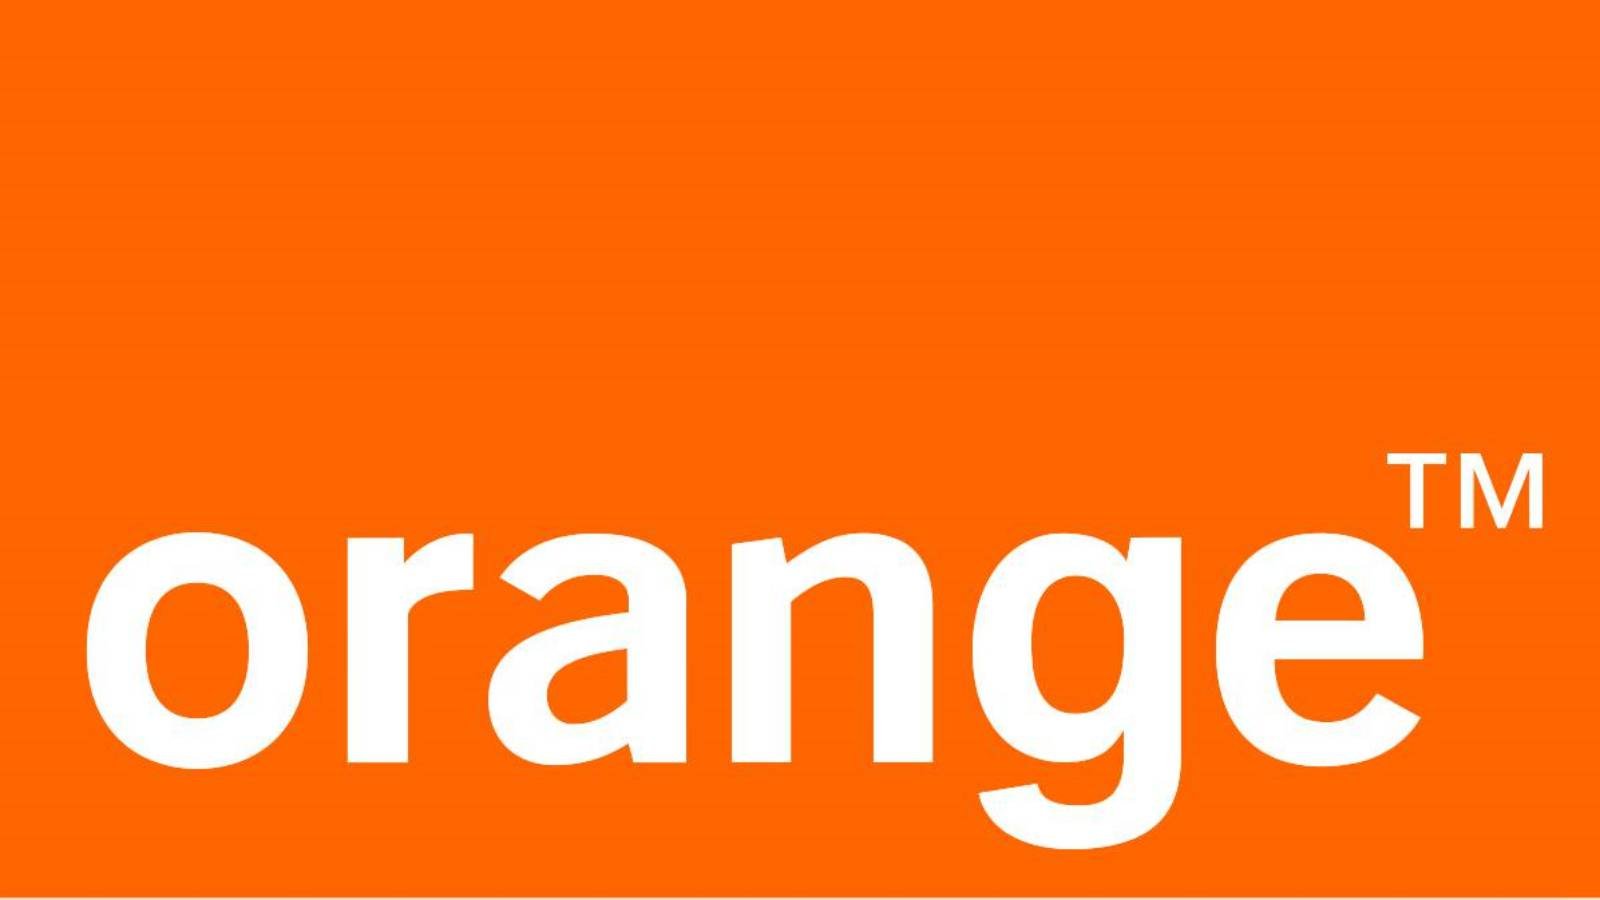 Orange imparte